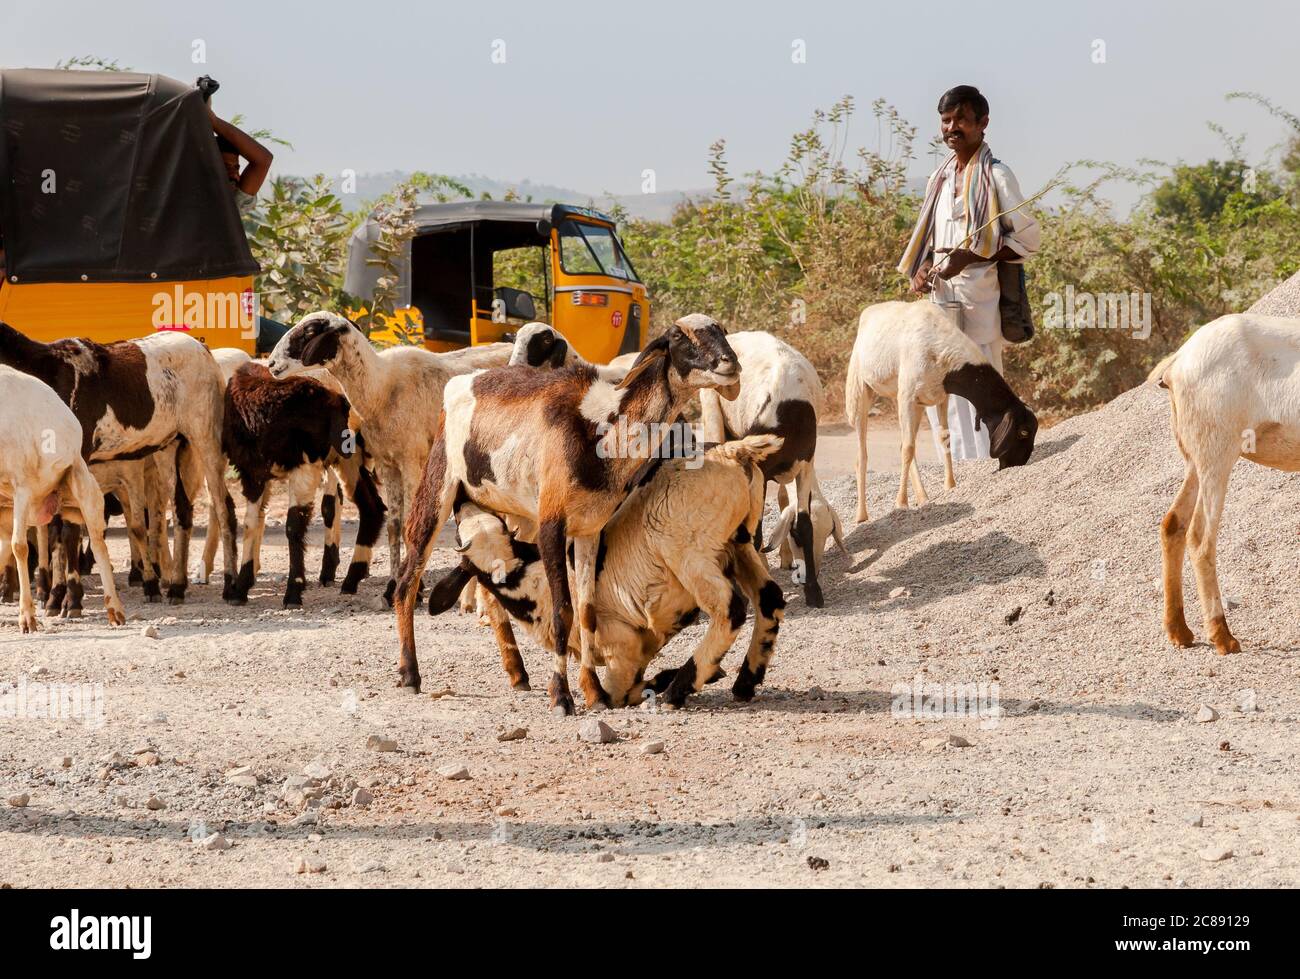 Puttaparthi, Andhra Pradesh, India - 15 de enero de 2013: Un hombre indio está pastando rebaños de ovejas en Puttaparthi, India Foto de stock